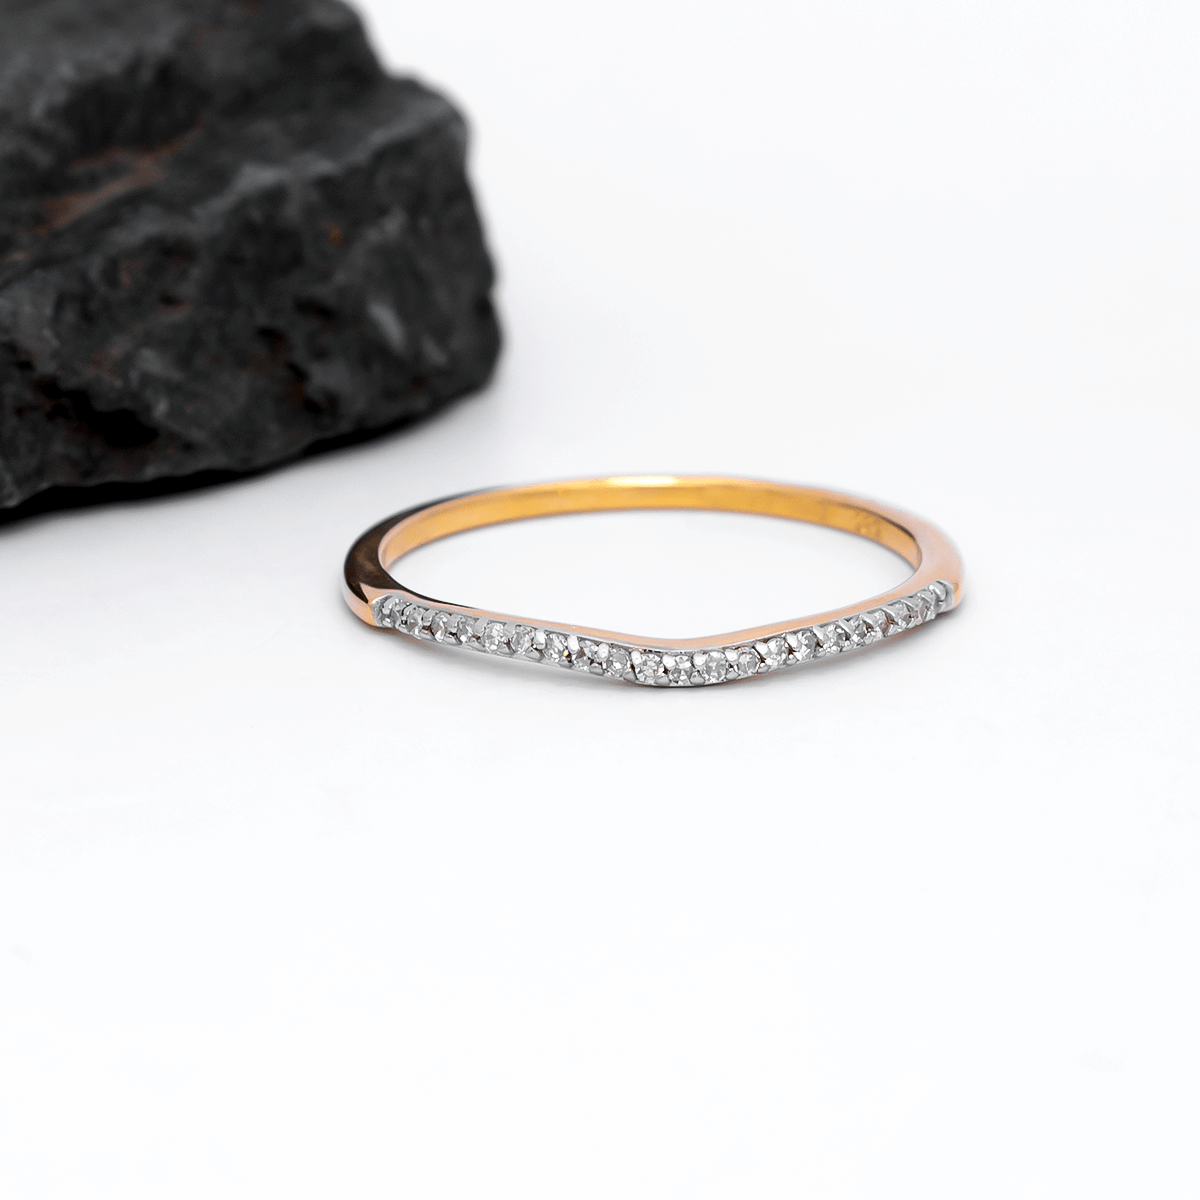 14k Gold Pave Set Diamond Wedding Ring